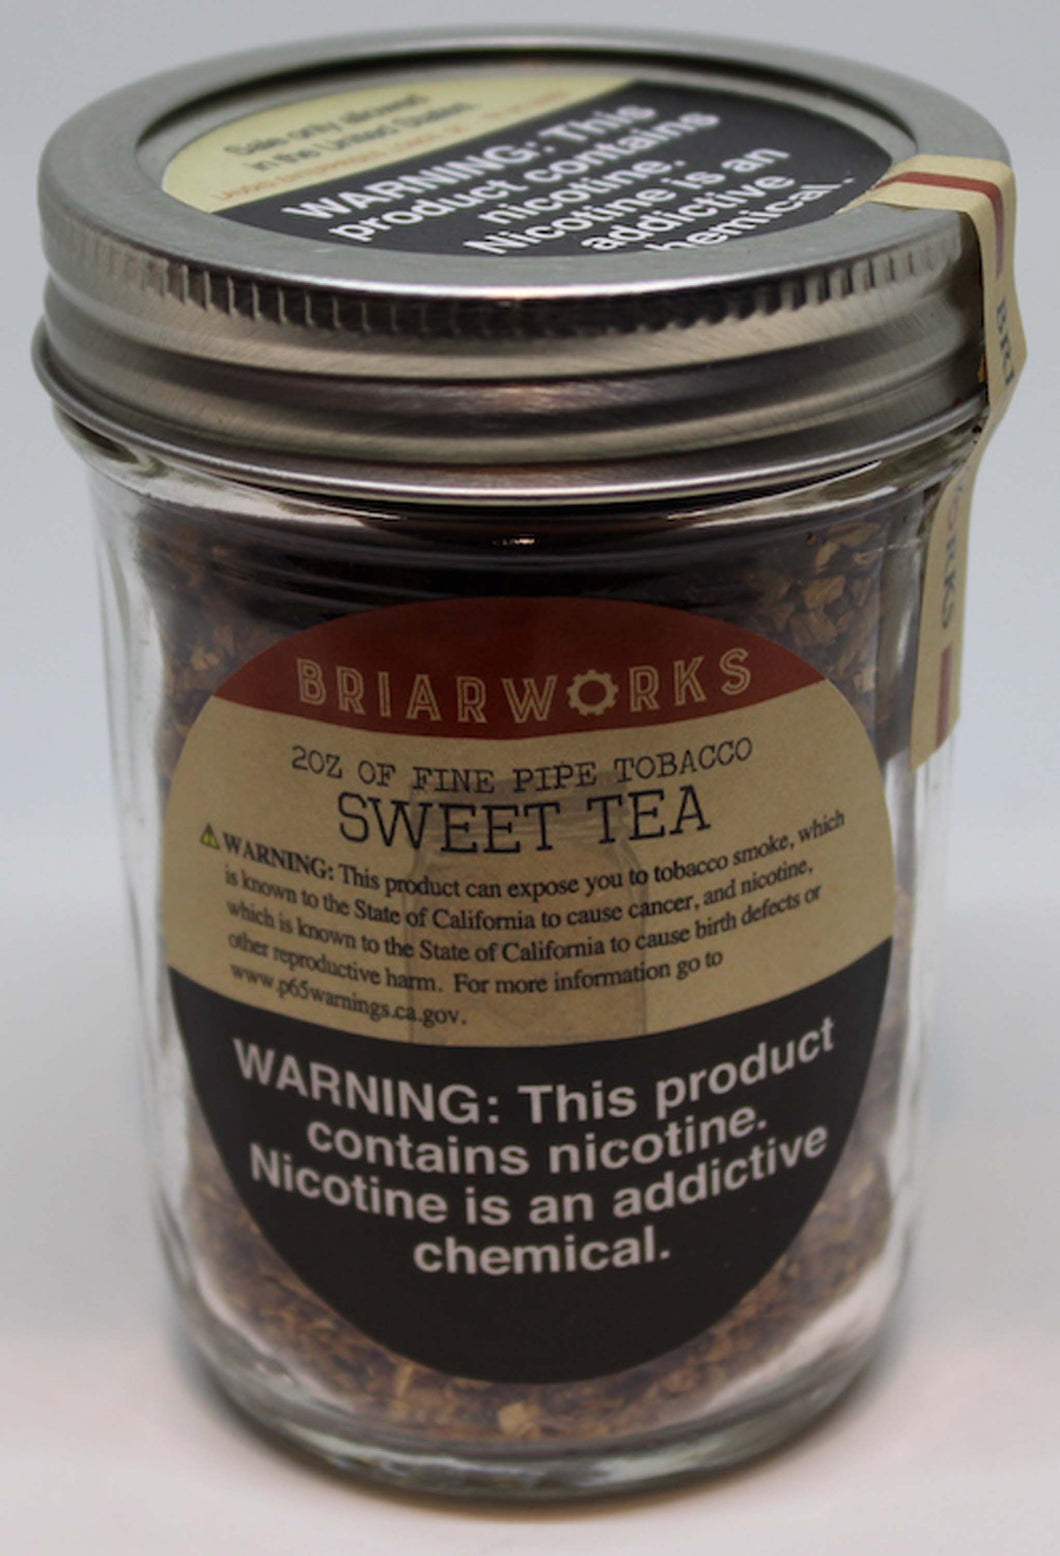 Briarworks Sweet Tea 2 oz Tin